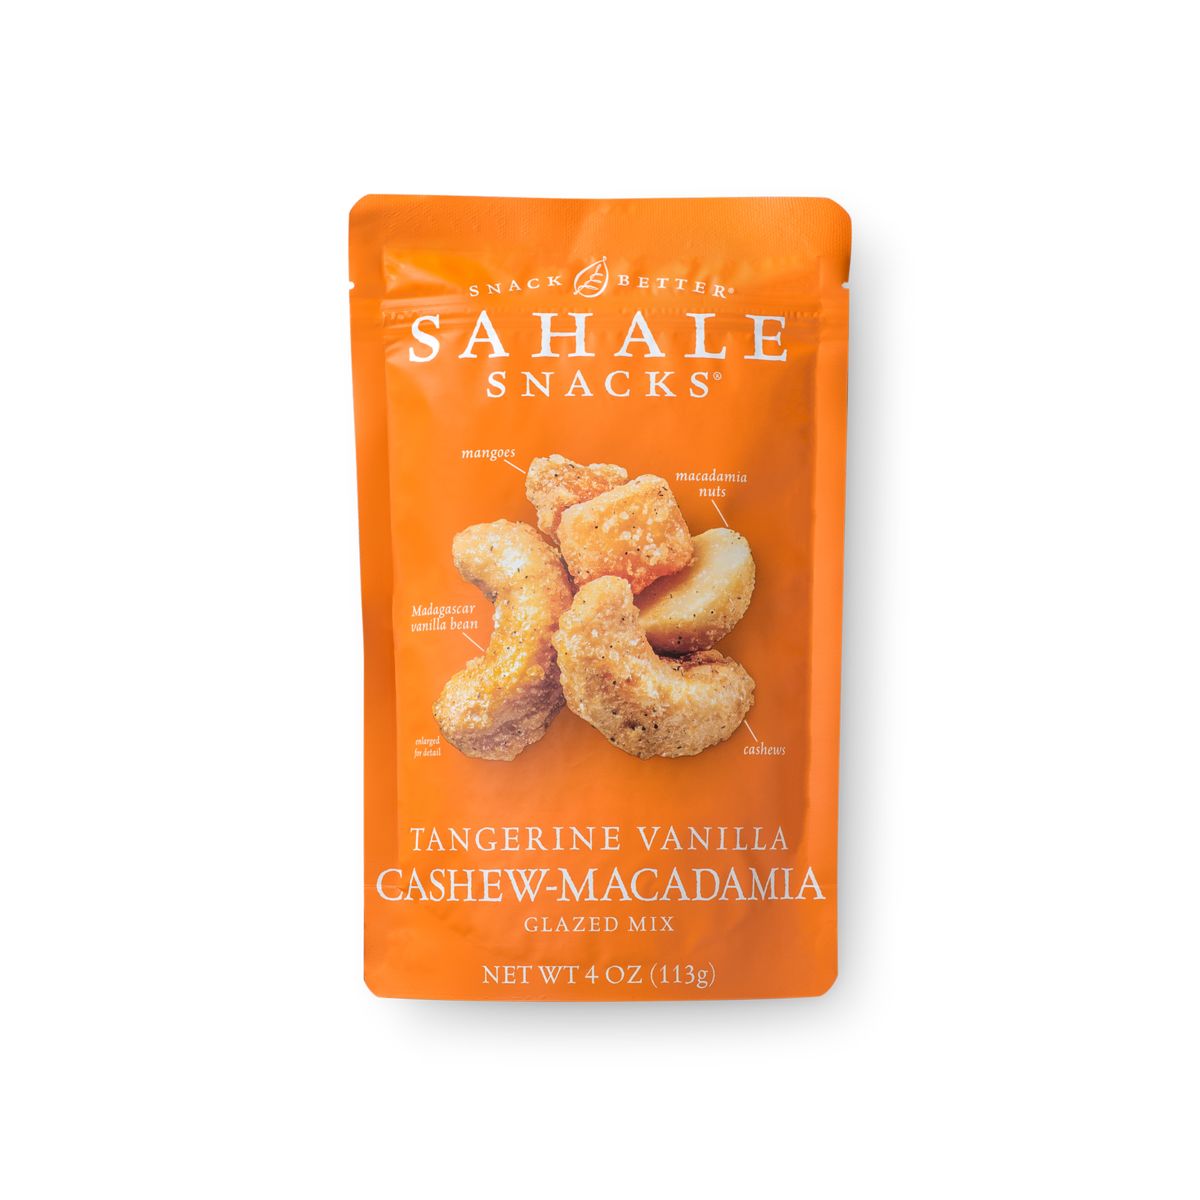 tangerine-cashew-macadamia-glazed-mix-or-sahale-snacks-r